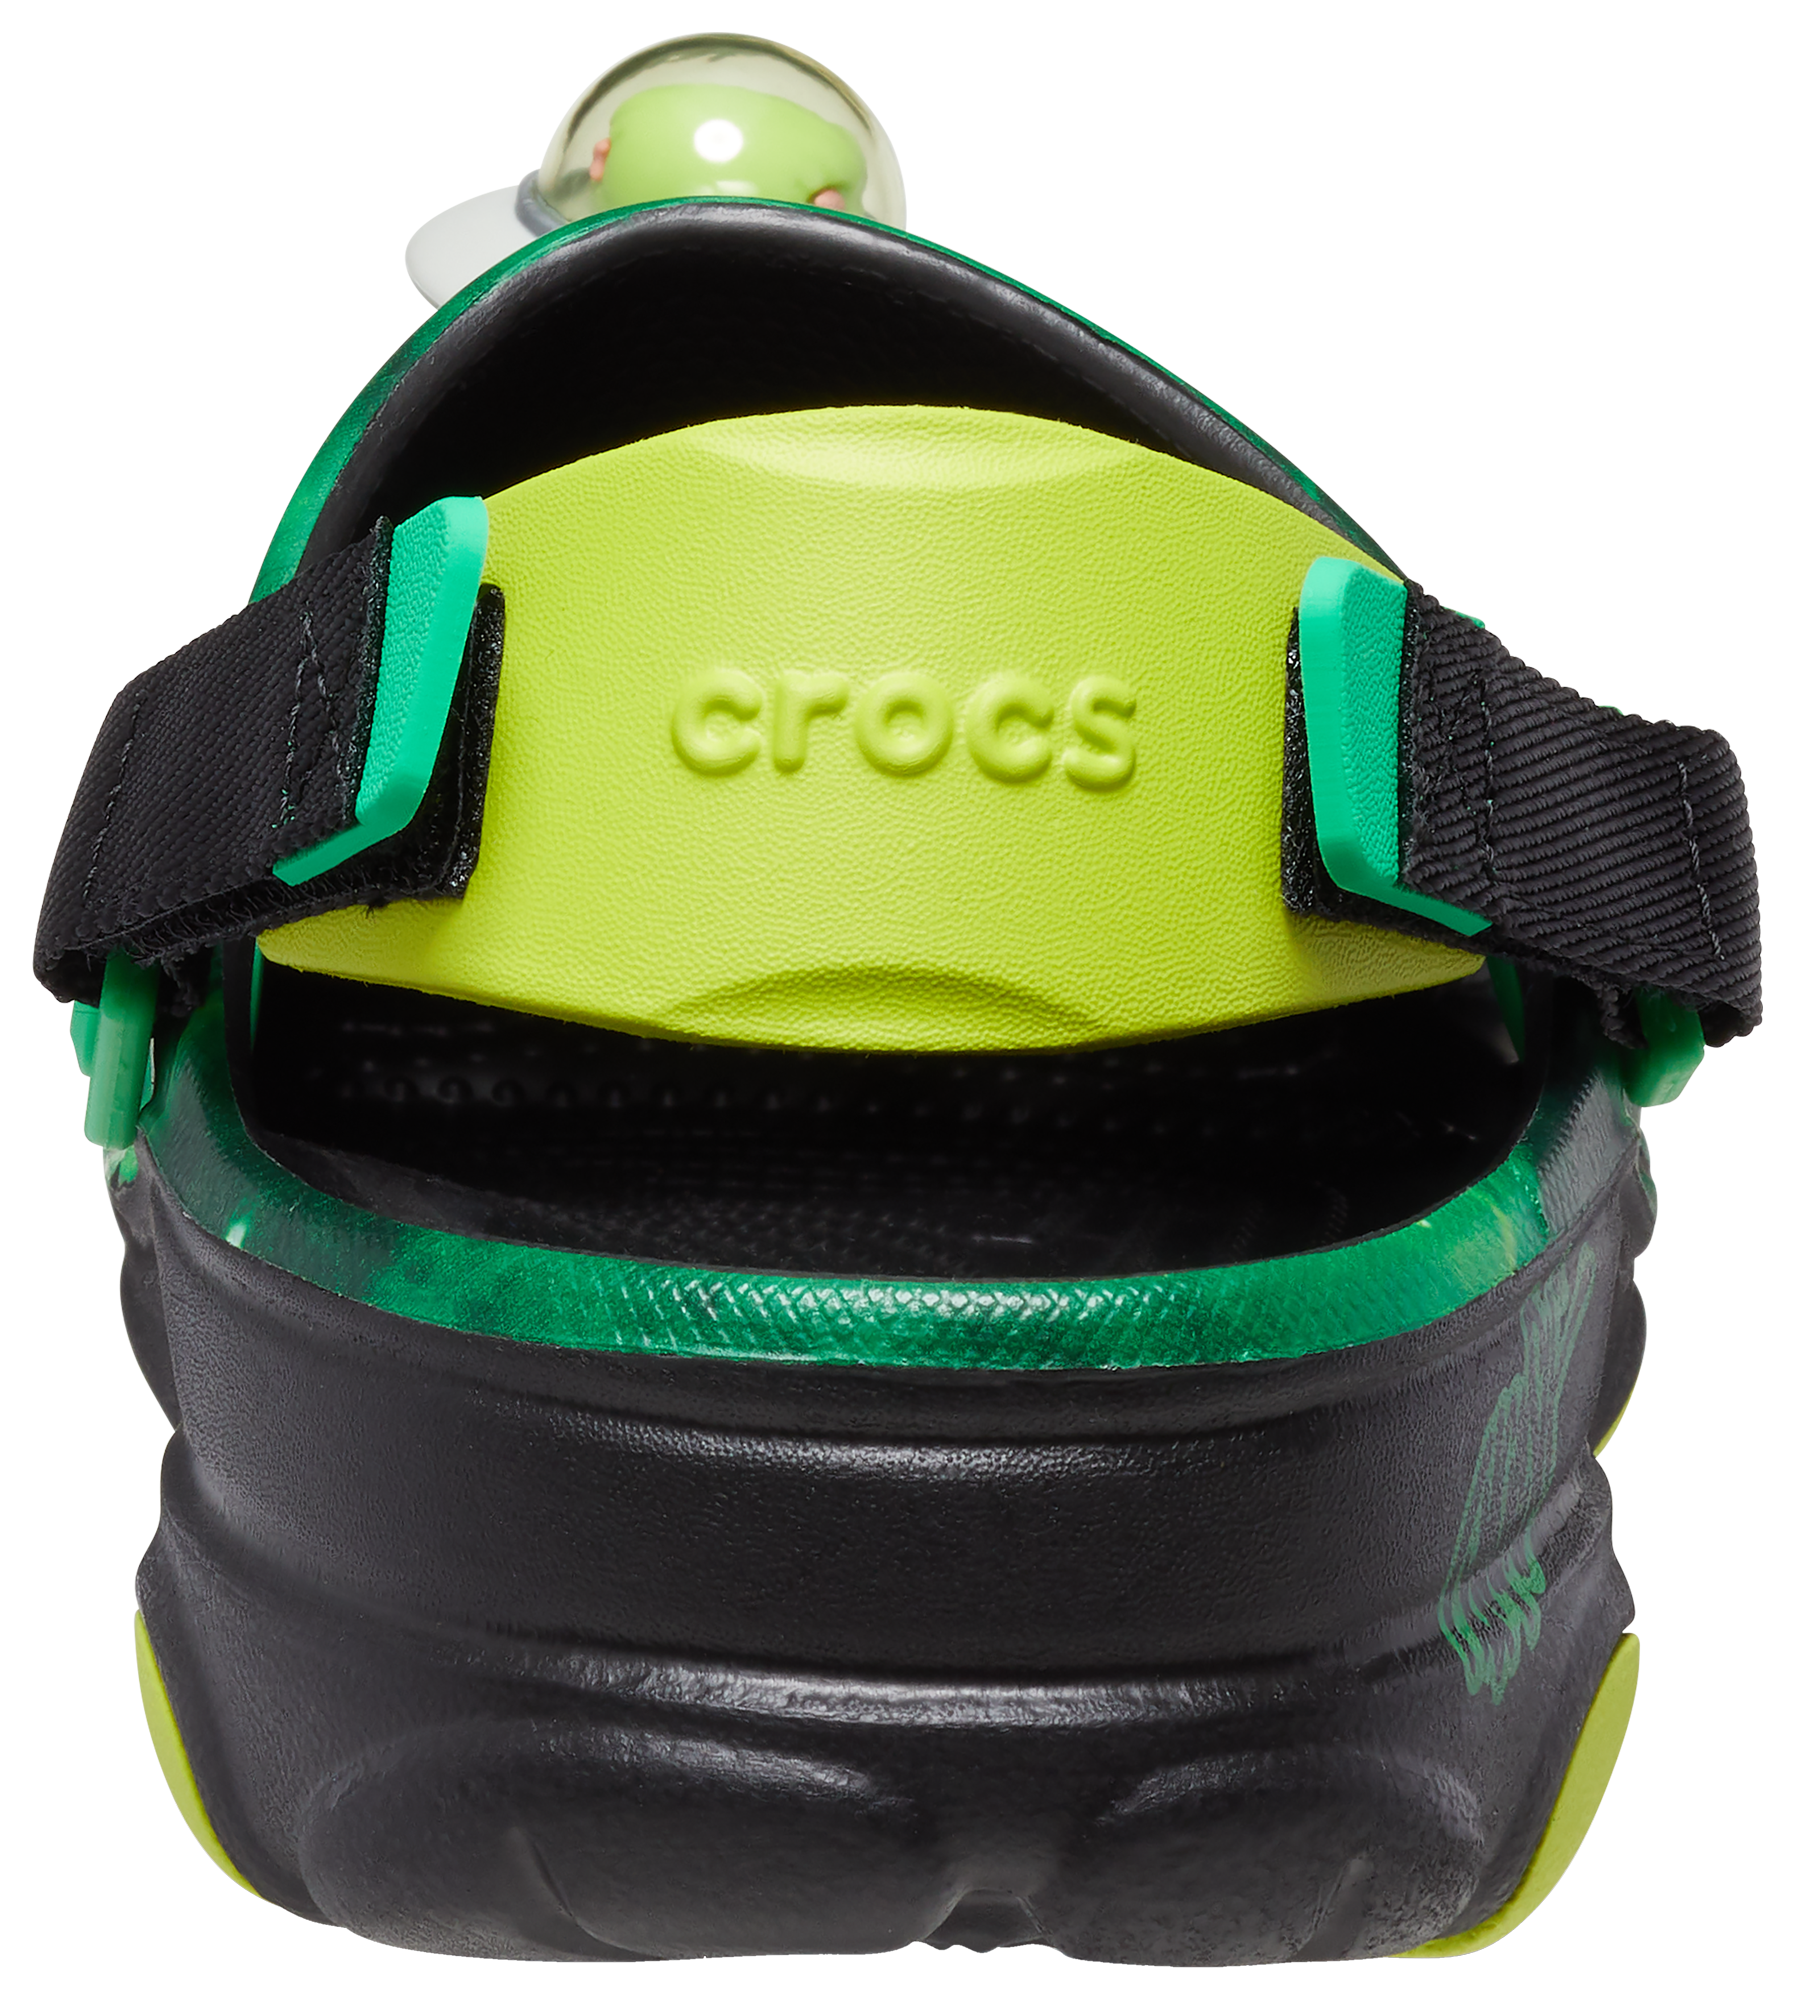 Crocs Ron English WHIN All-Terrain Clogs